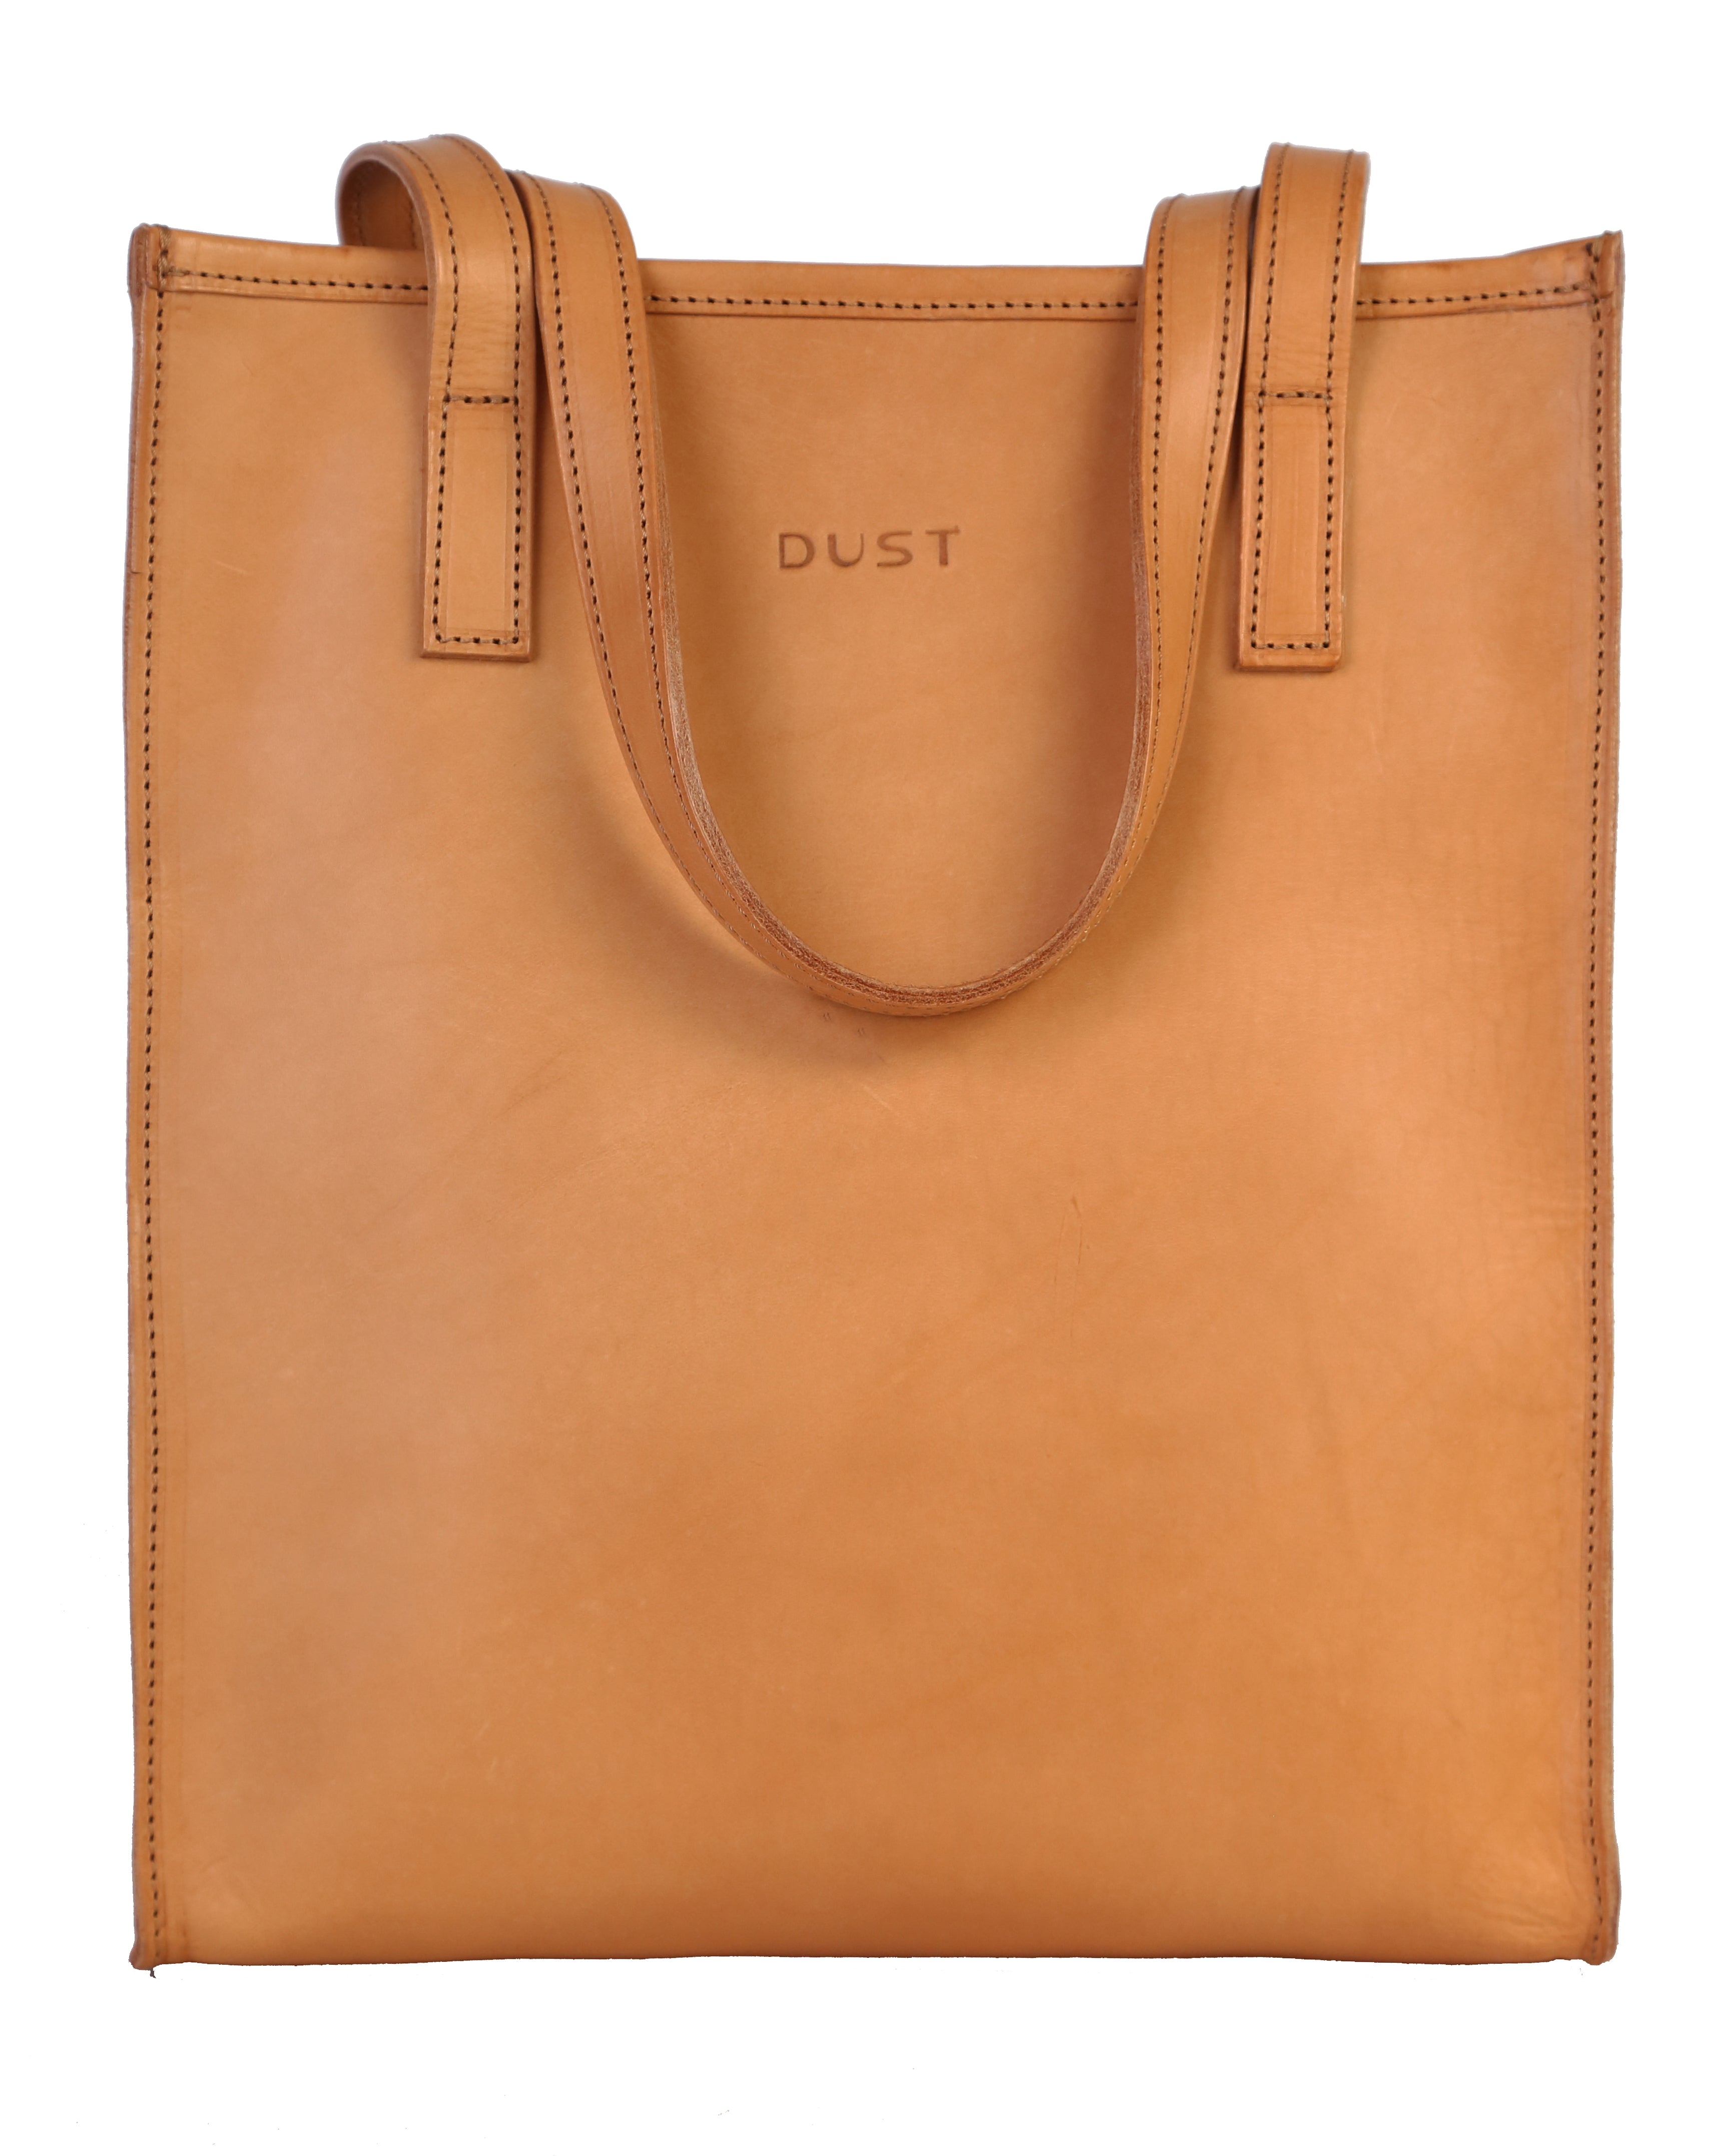 Leather Tote Bag The Dust Company su Artisia Store